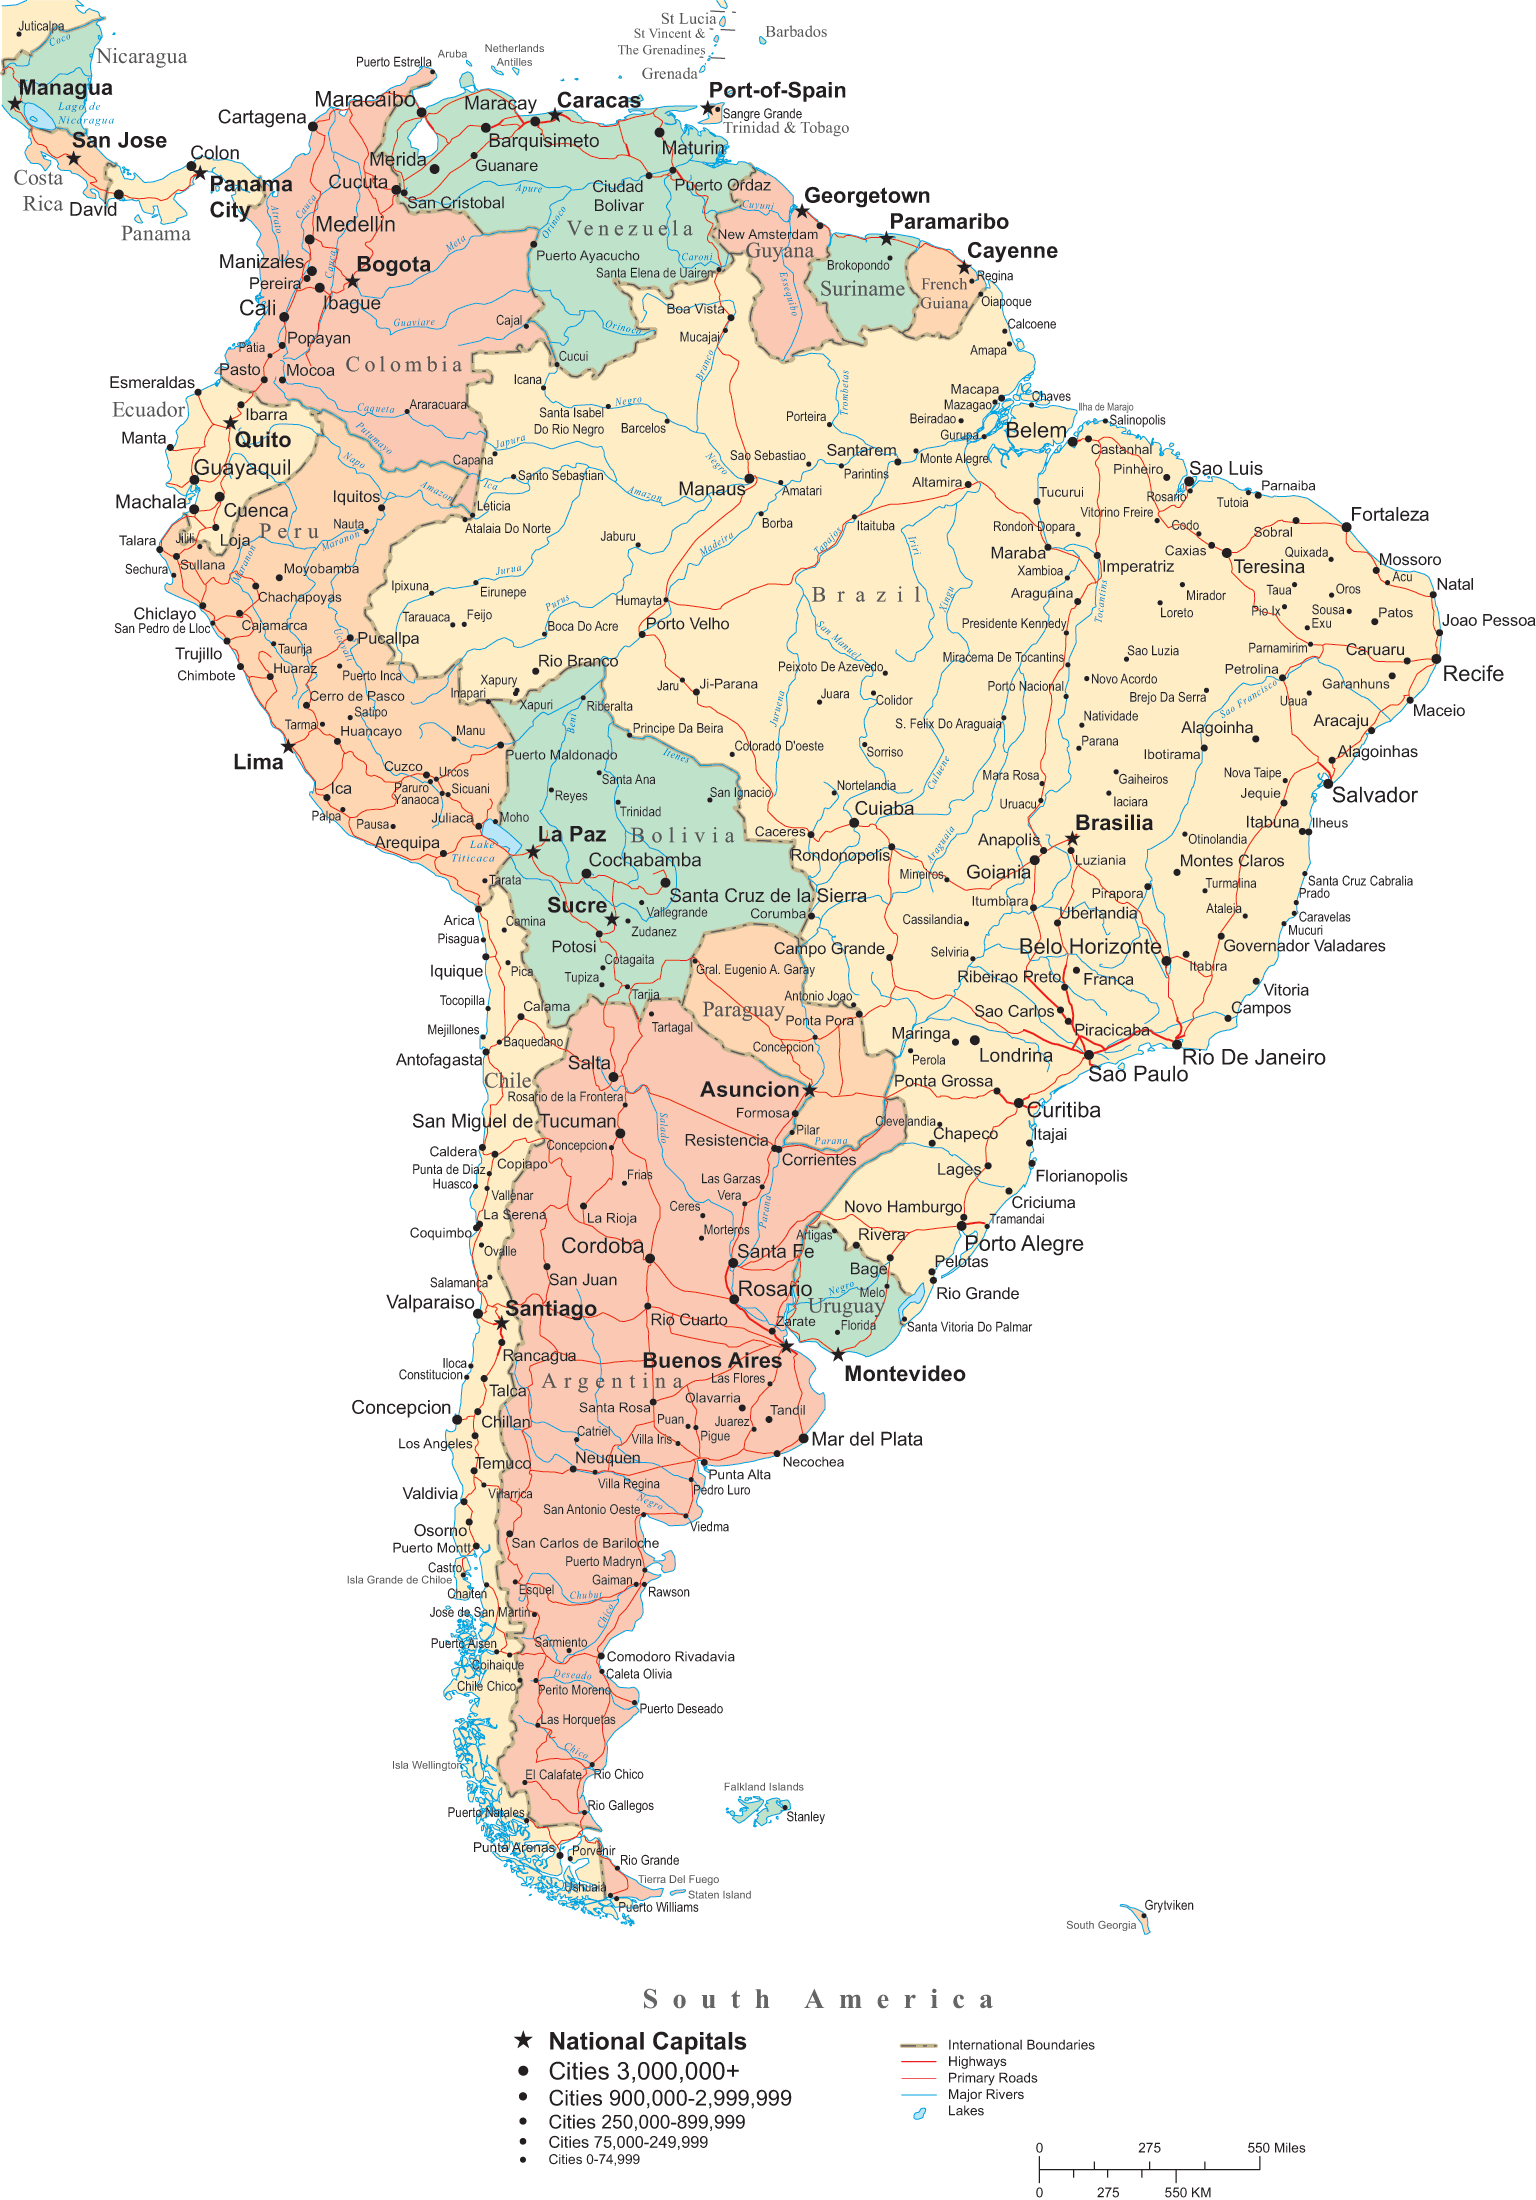 Mapa Político de América del Sur